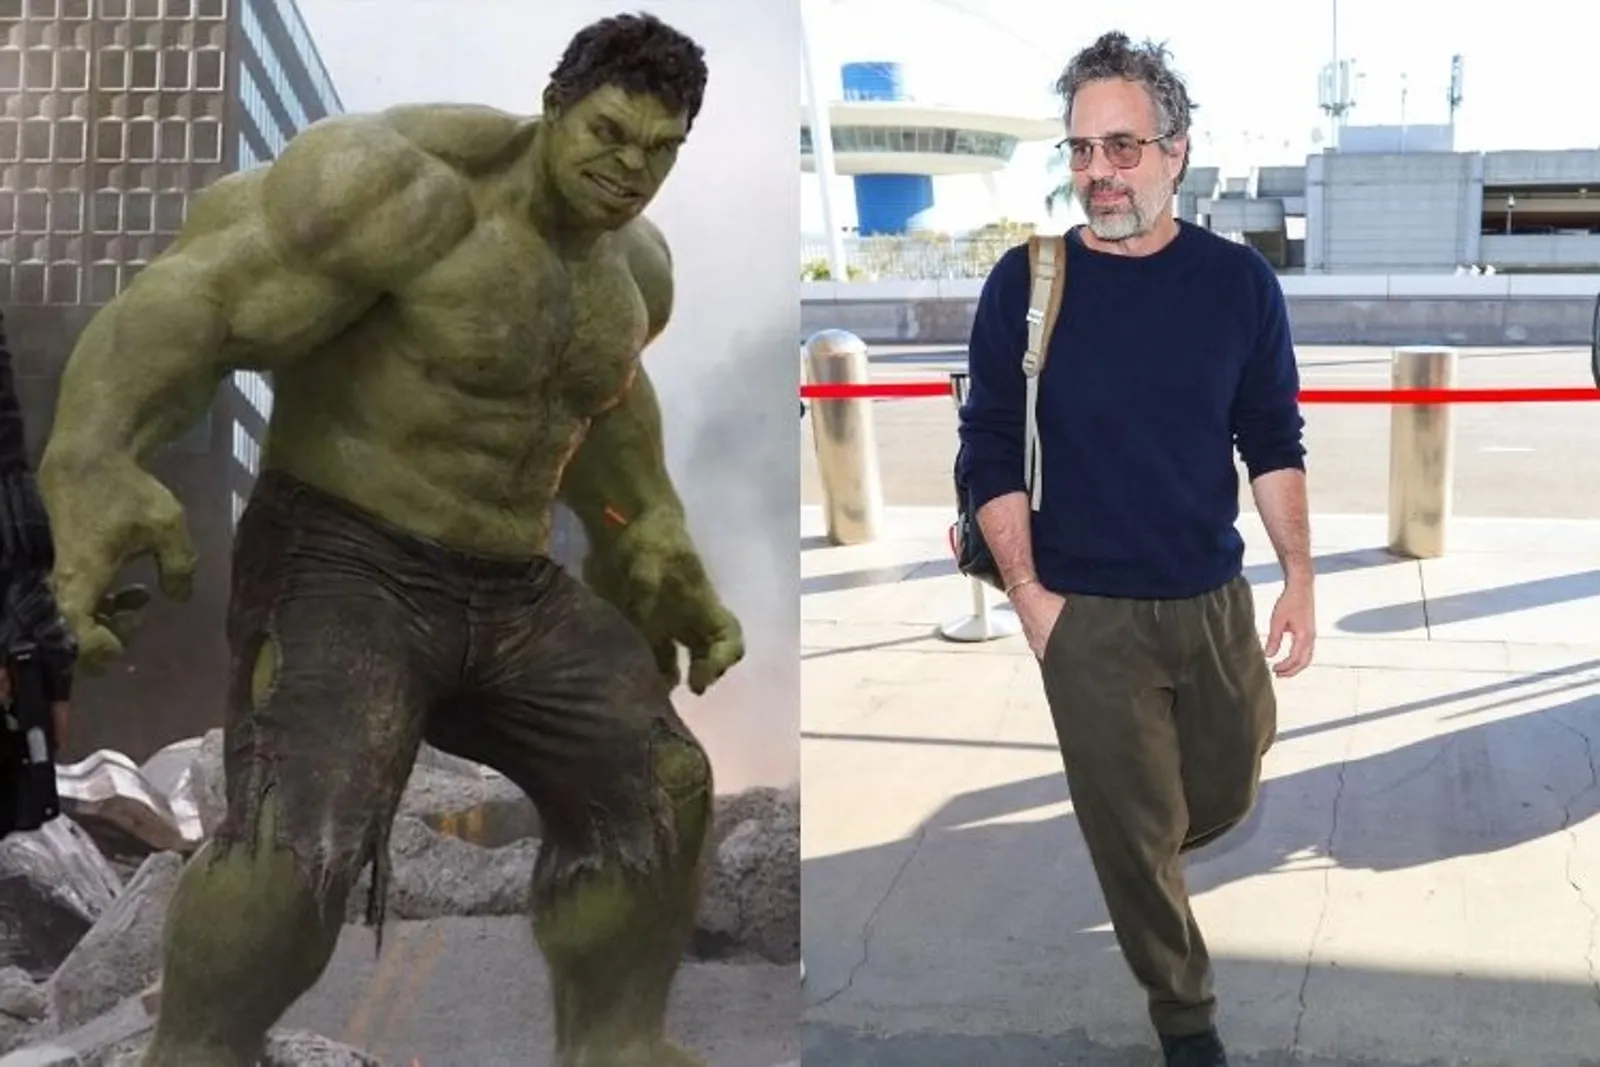 Perbandingan Para Pemain Film Marvel sebagai Superhero vs Sehari-hari